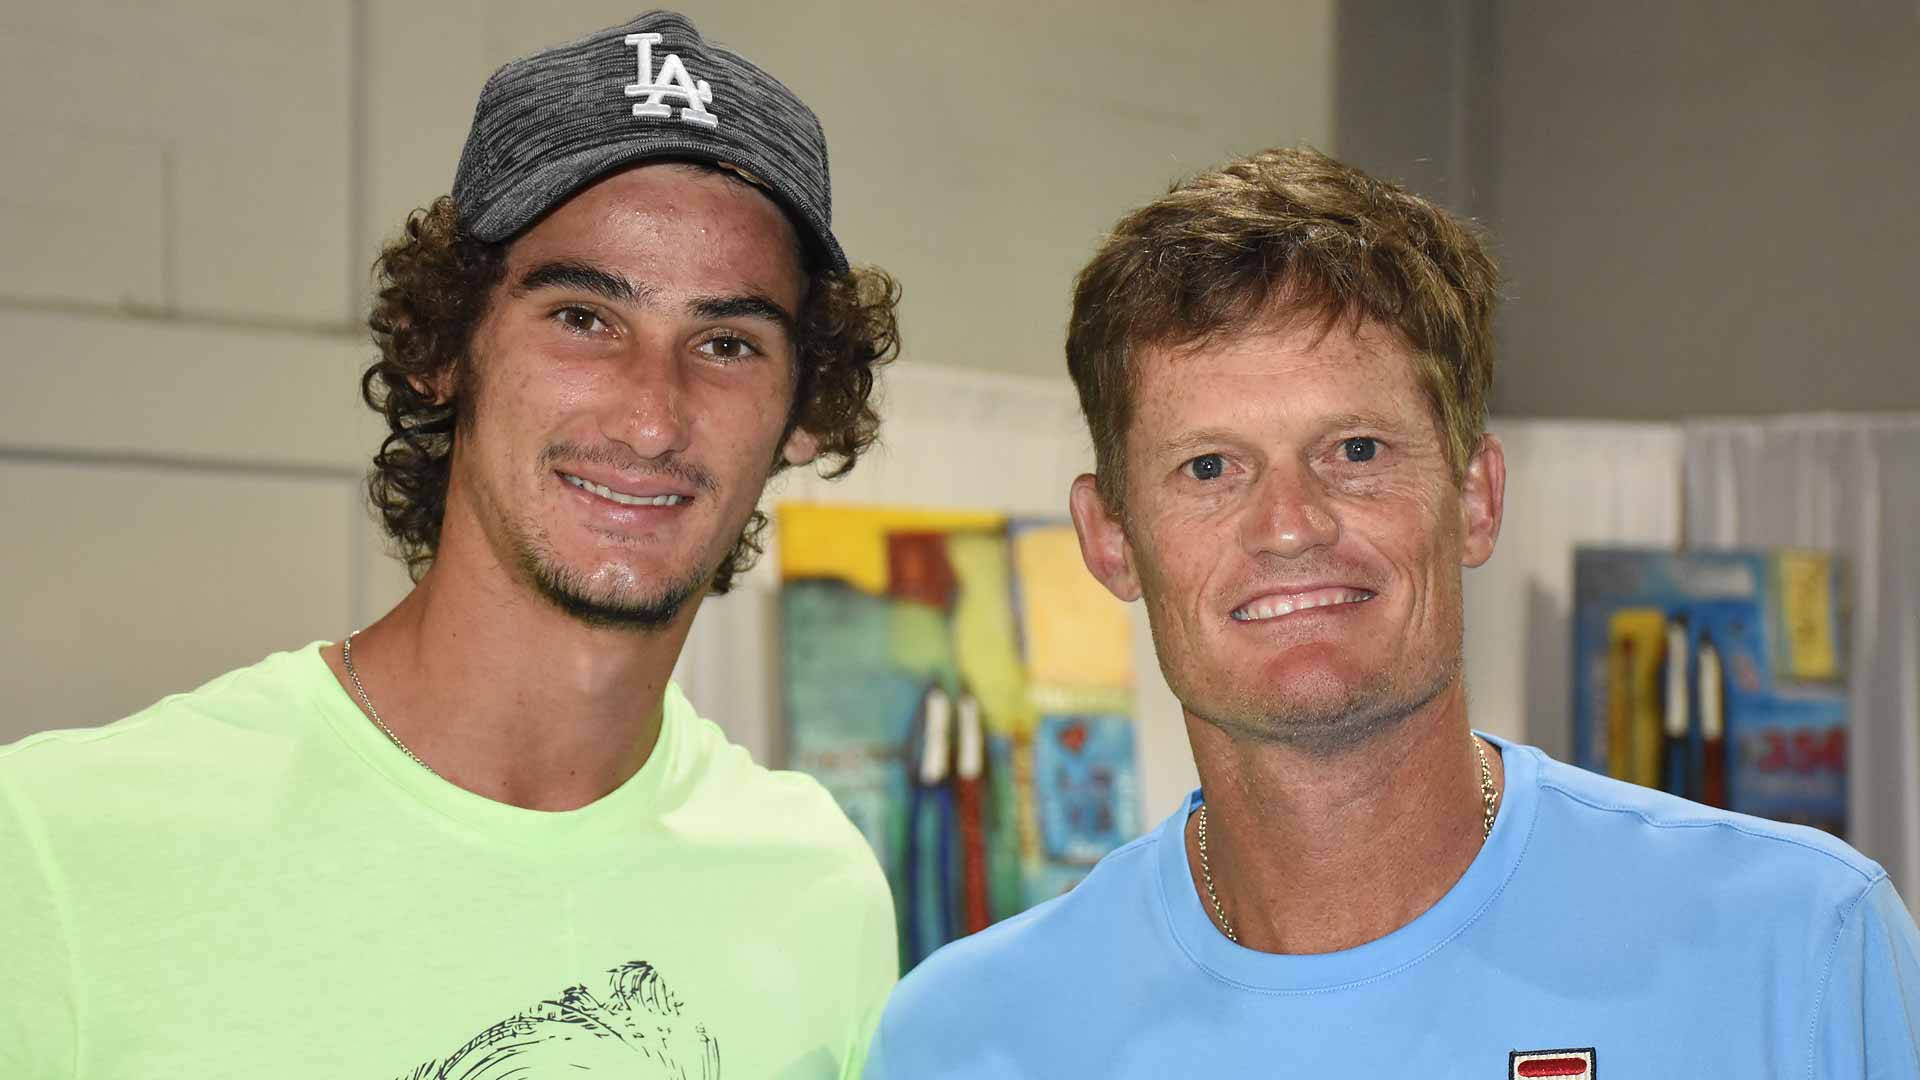 Wayneferreira Und Lloyd Harris Sind Zwei Südafrikanische Tennisspieler. Wallpaper